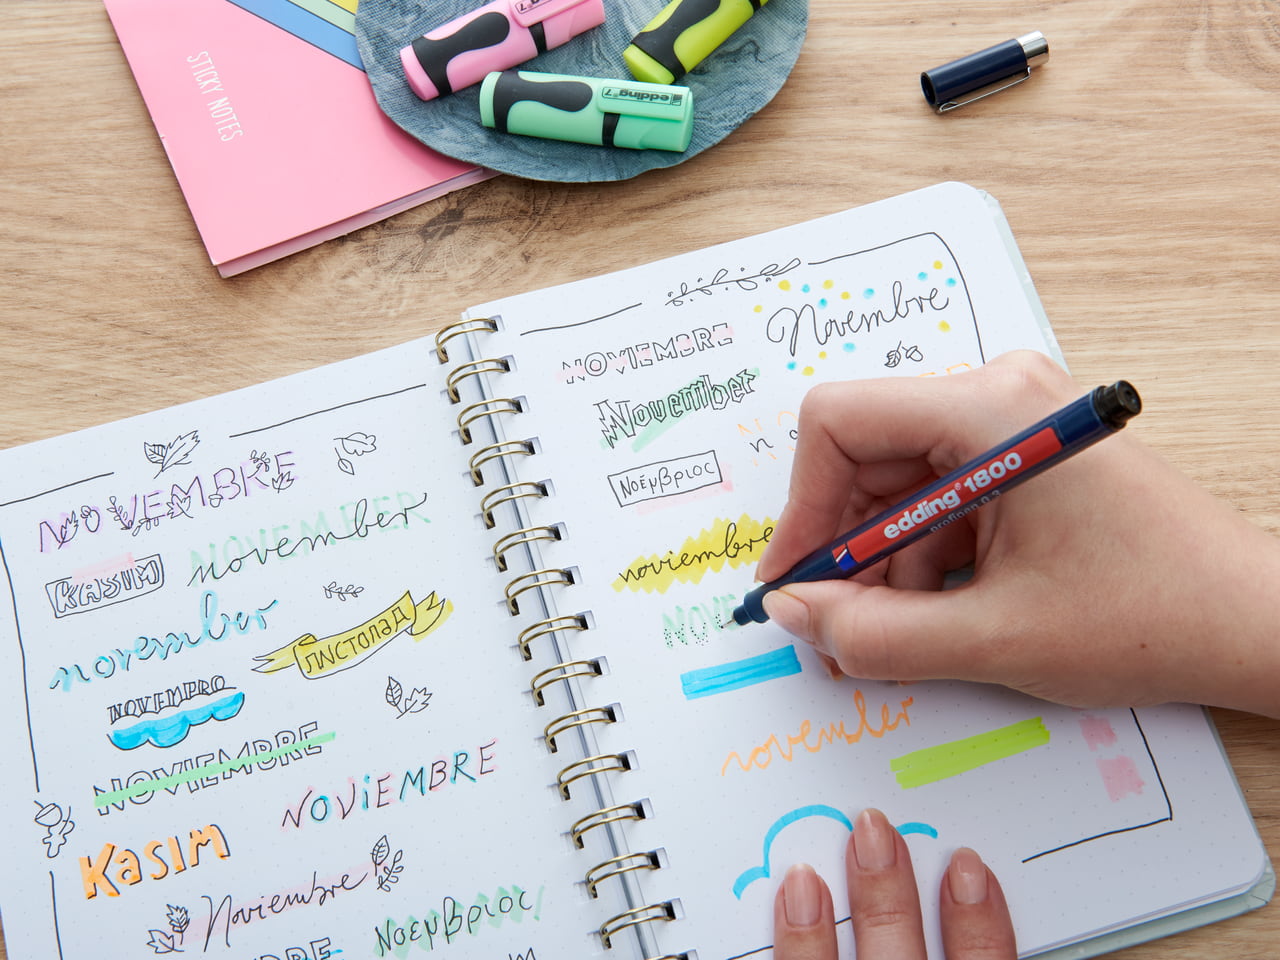 Eine Person übt das Handlettering des Wortes „November“ in verschiedenen Stilen und Sprachen in einem Notizbuch, umgeben von Edding-Markern und Schreibwaren.